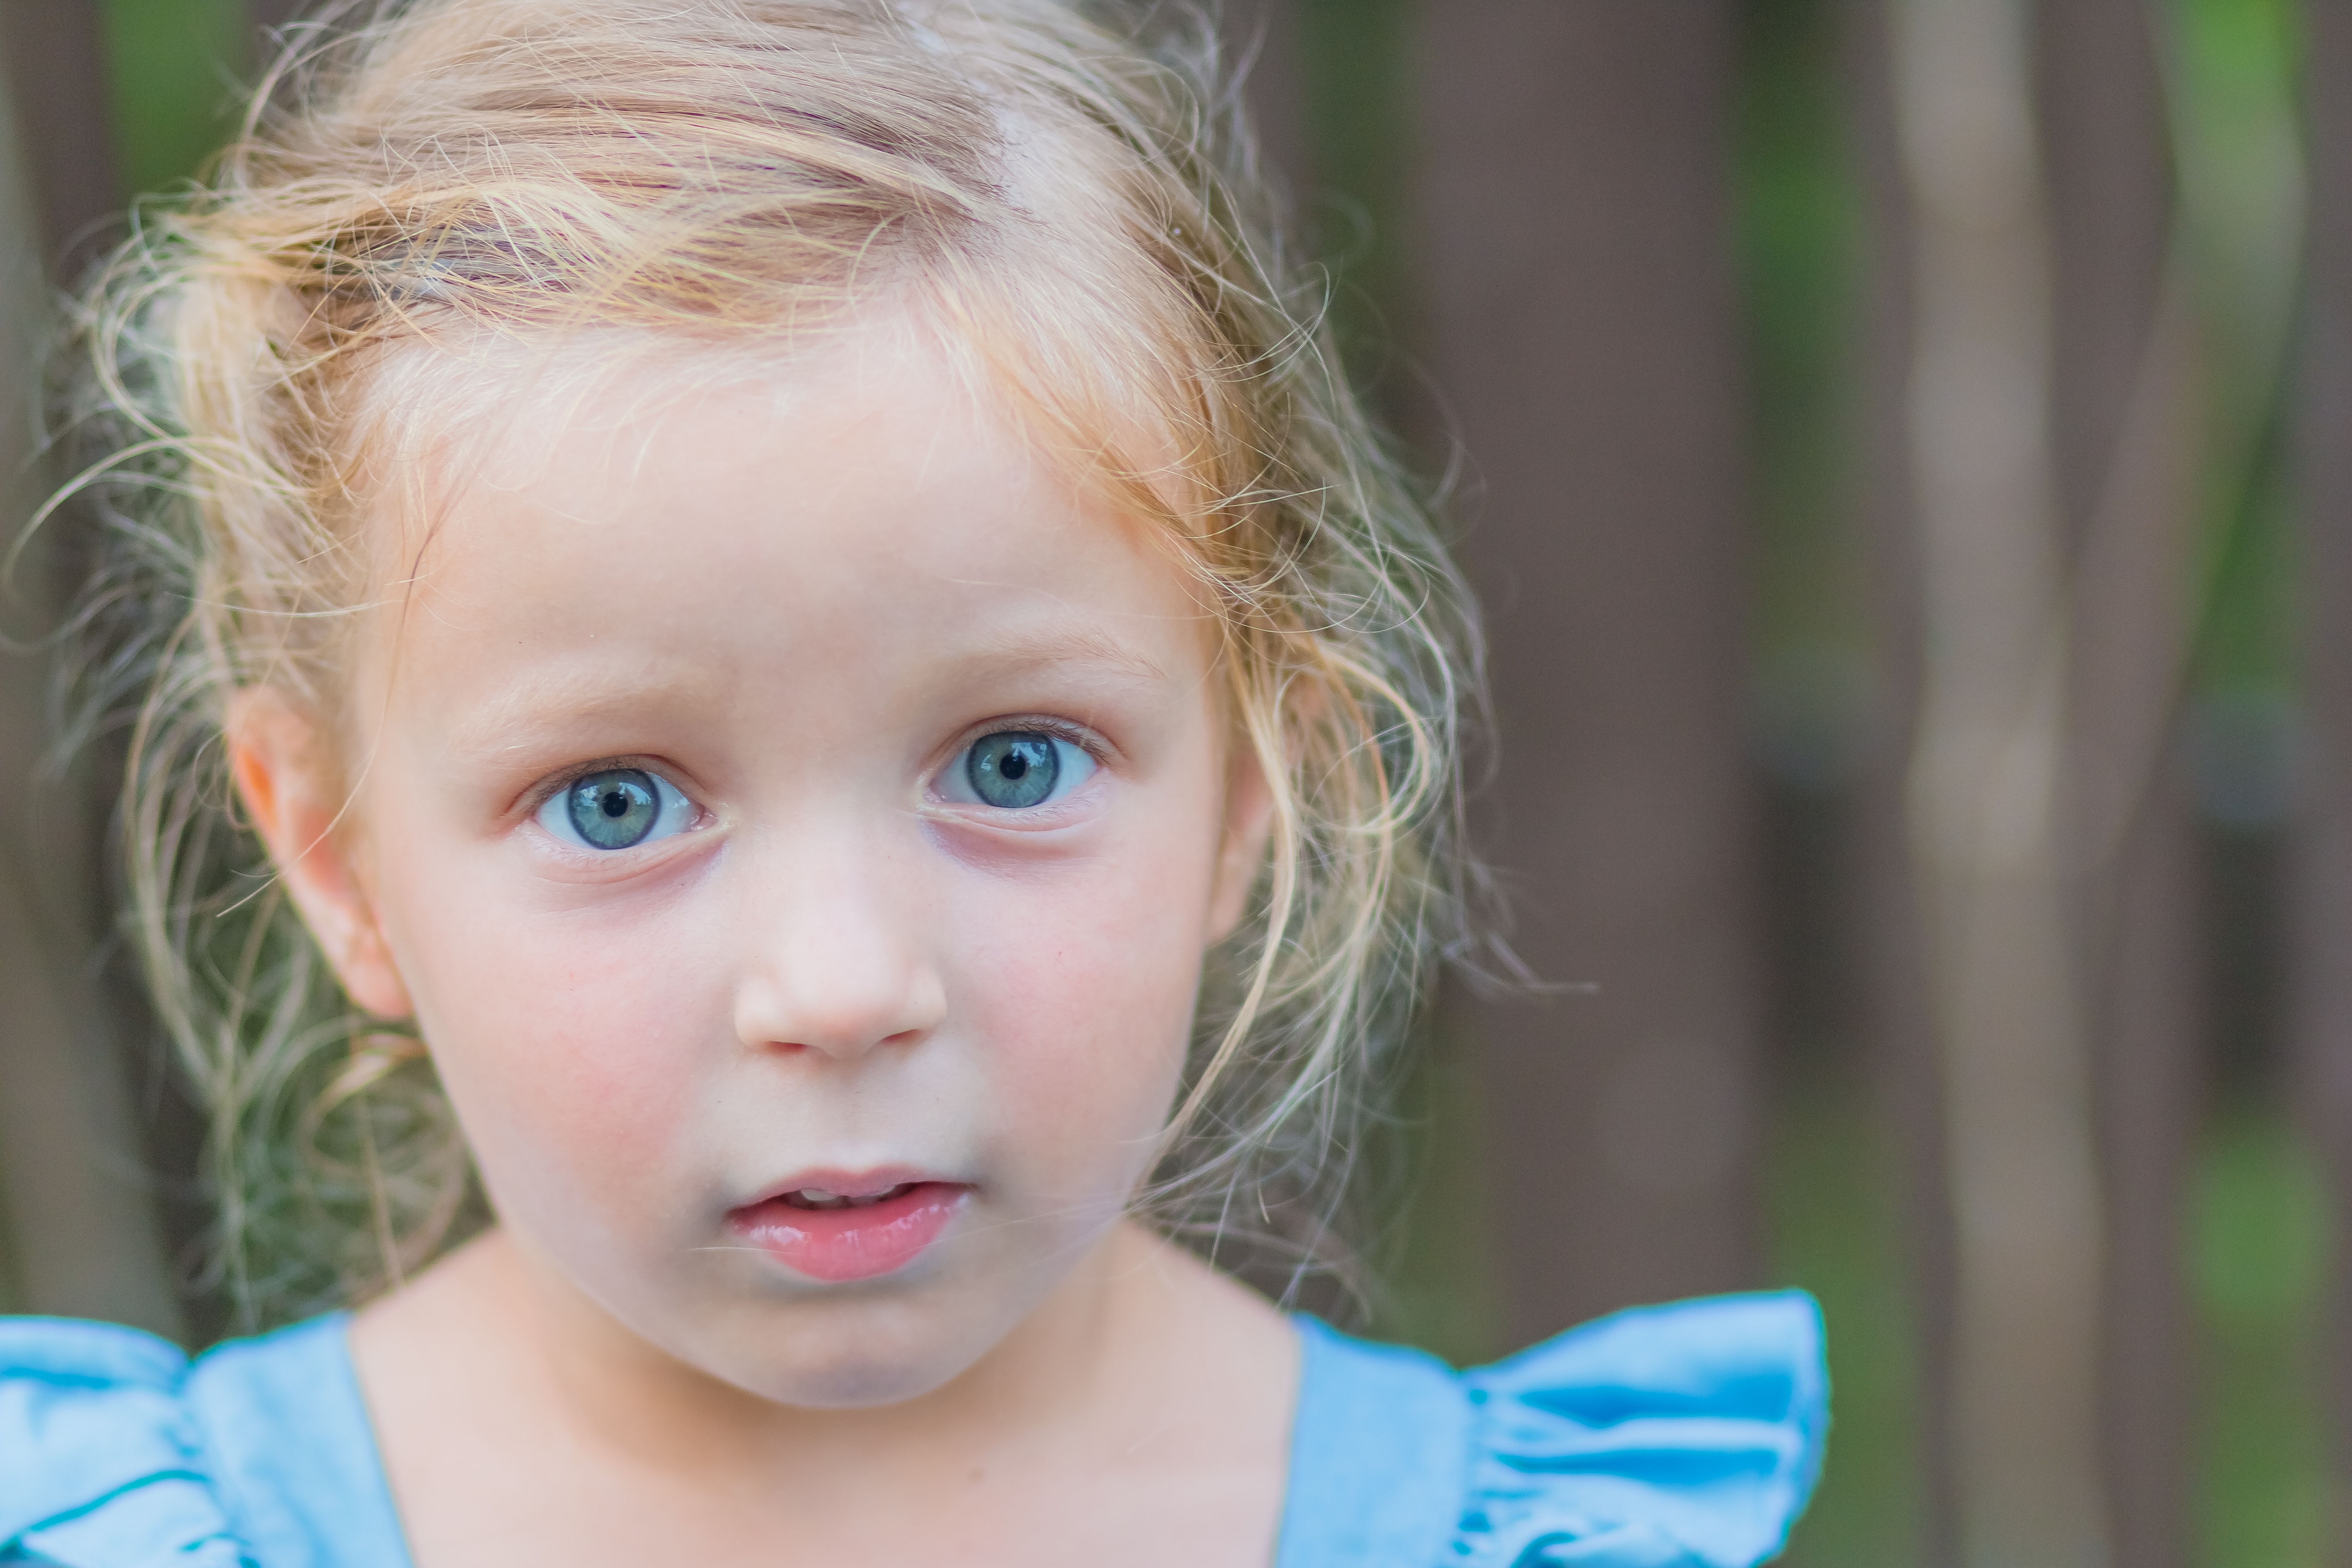 A little girl | Source: Shutterstock